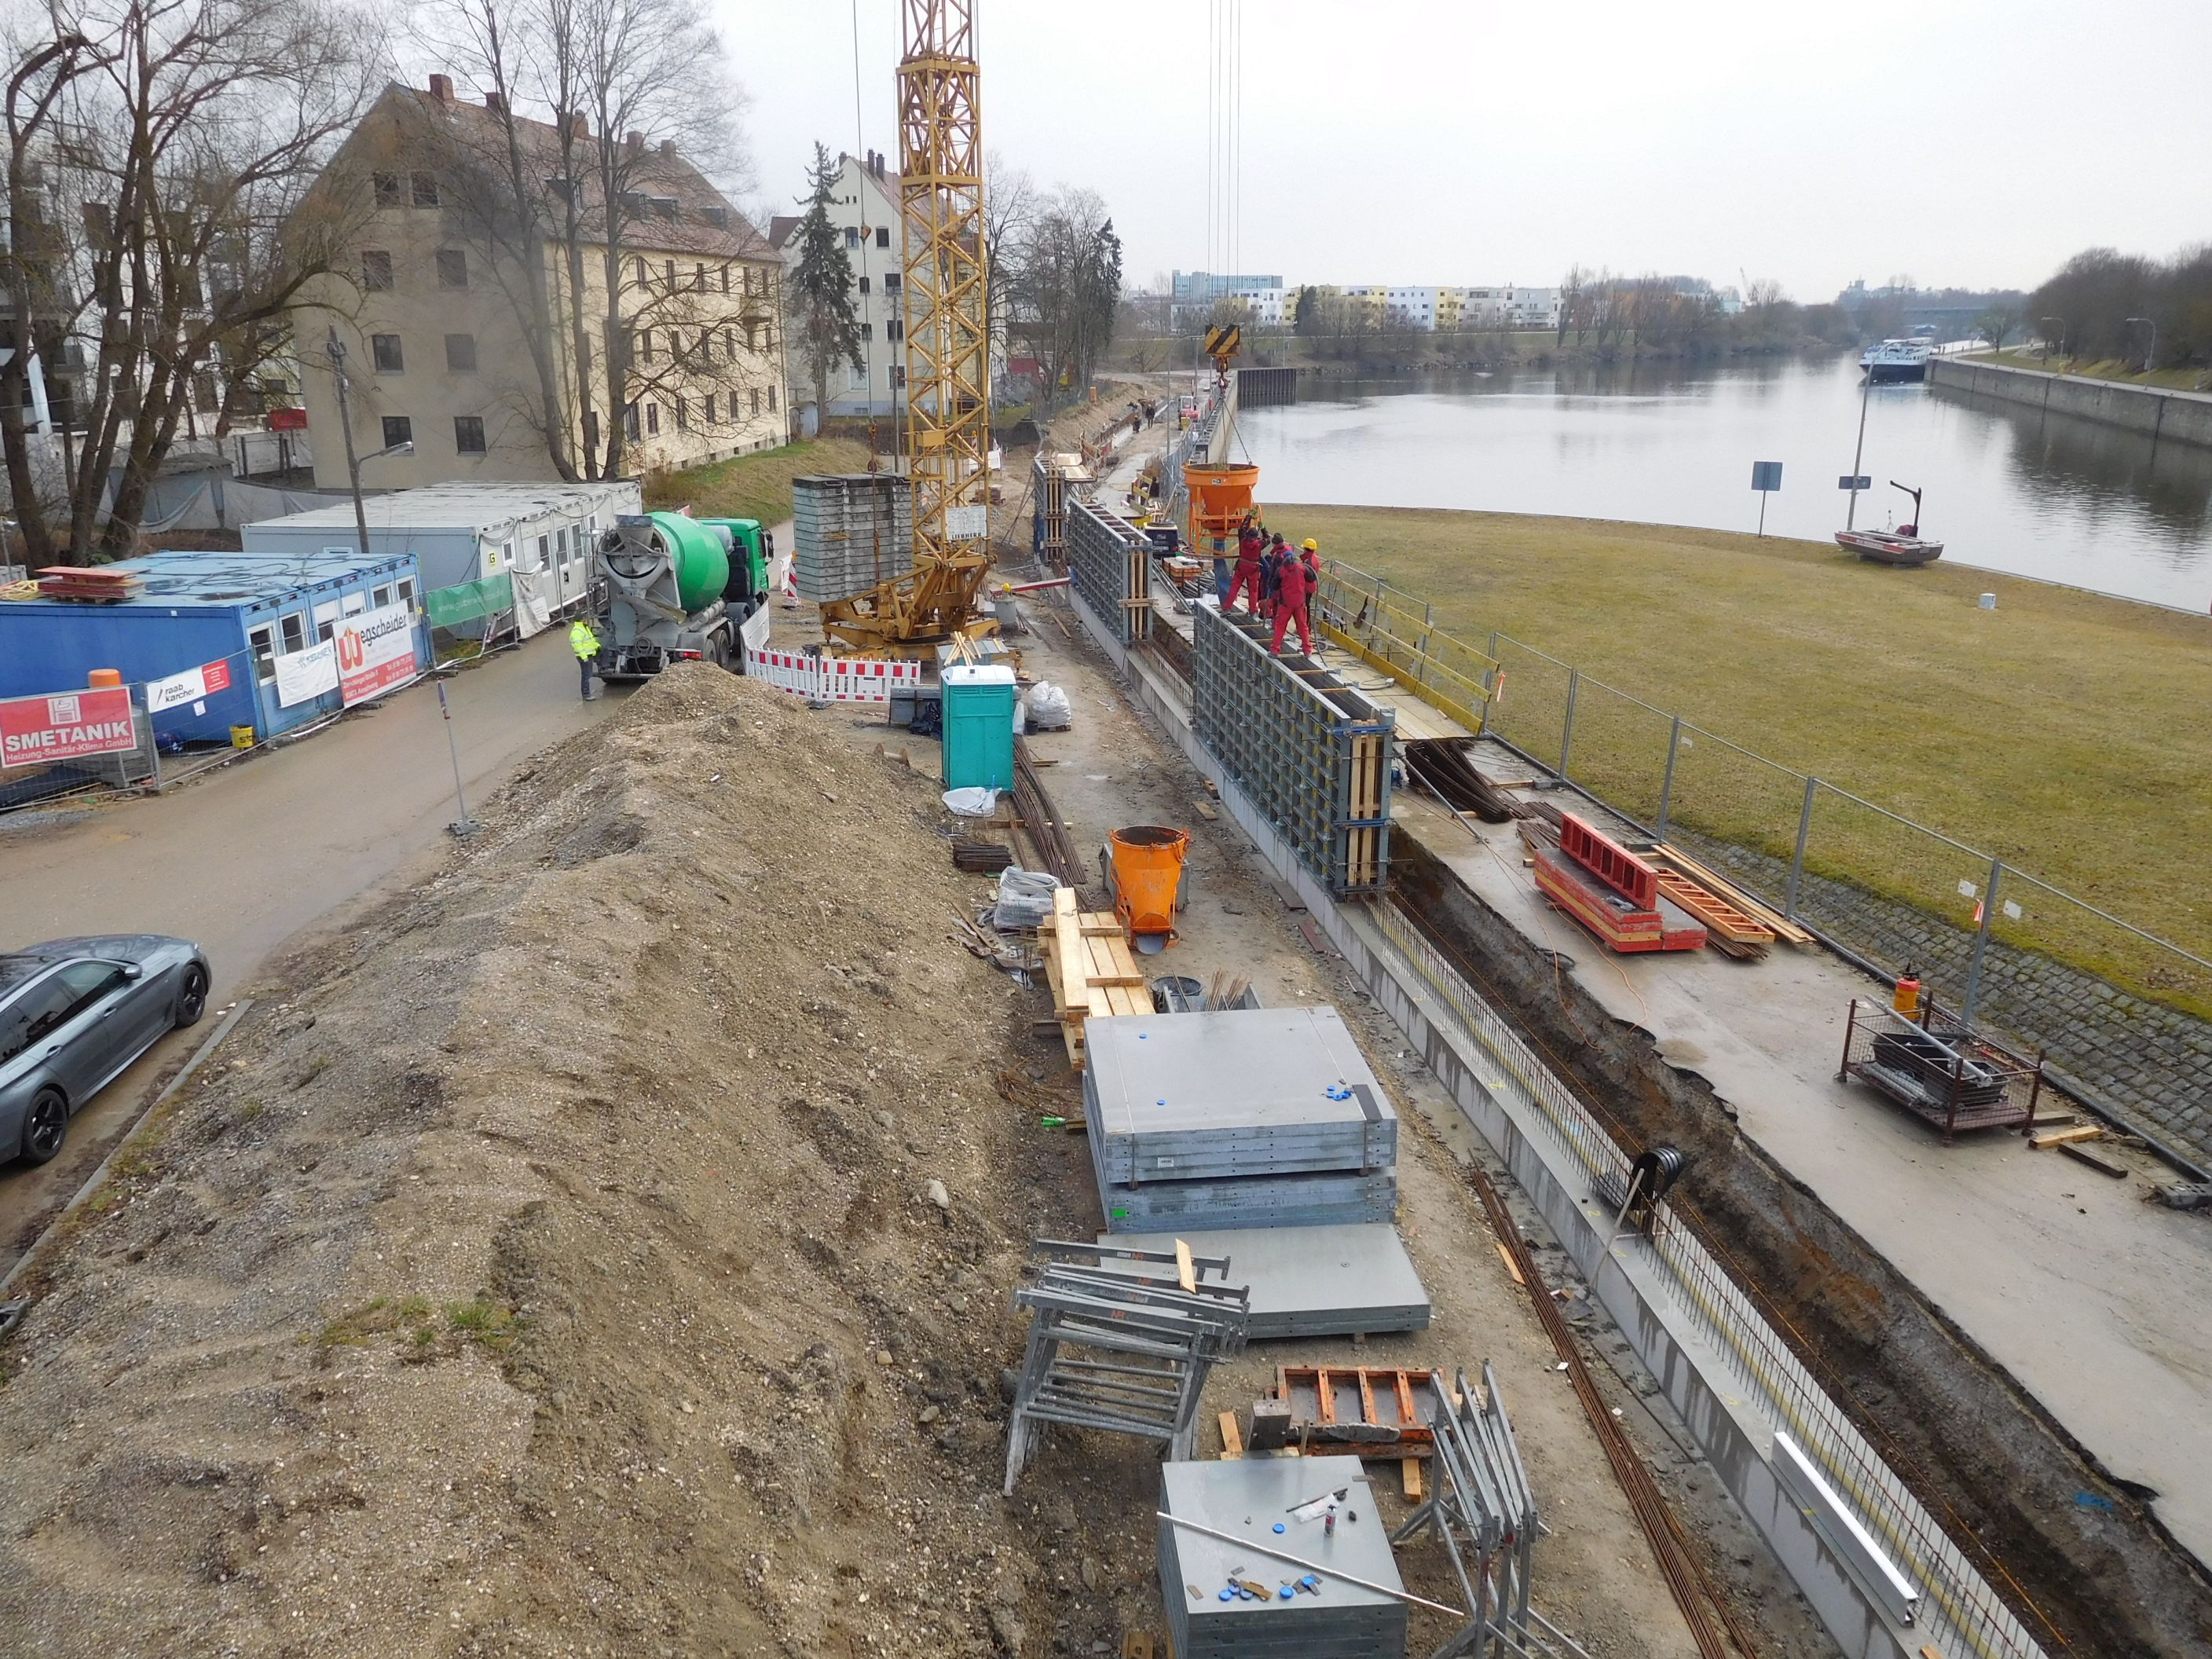 Überblick auf die Baustelle von der Kanalbrücke gesehen, links Bebauung, Baucontainer und ein Erdhaufen, rechts die Schalungsbretter, die Hochwasserschutzmauer und die Donau, im Hintergrund ein Kran